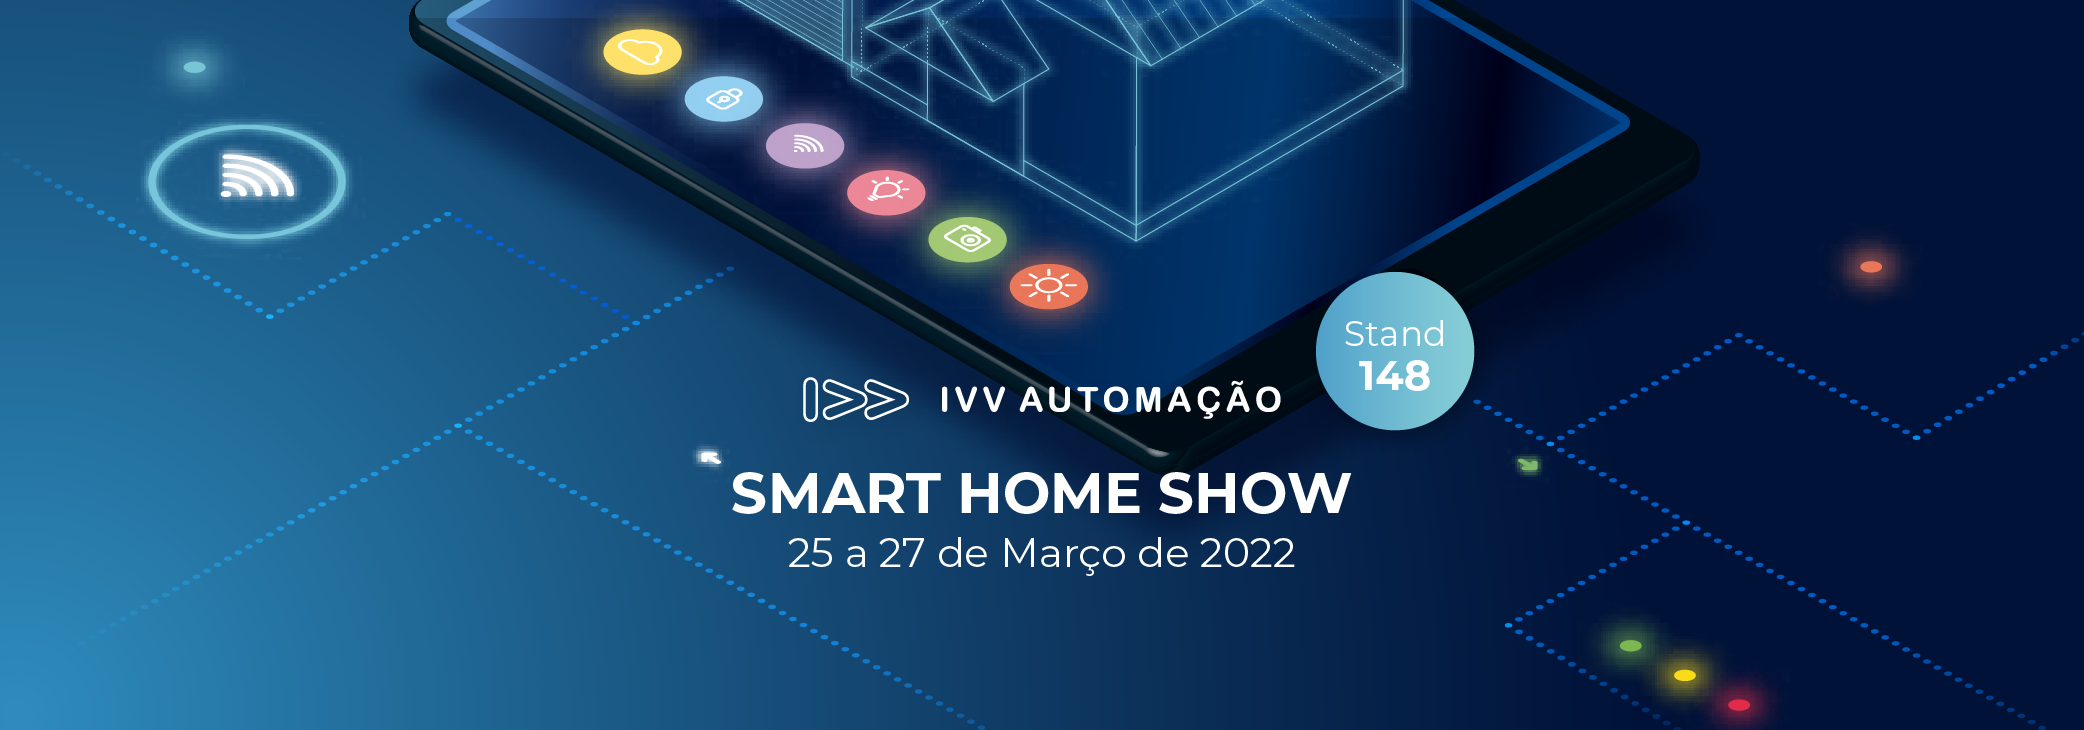 CONVITE | Smart Home Show 25-27 Março